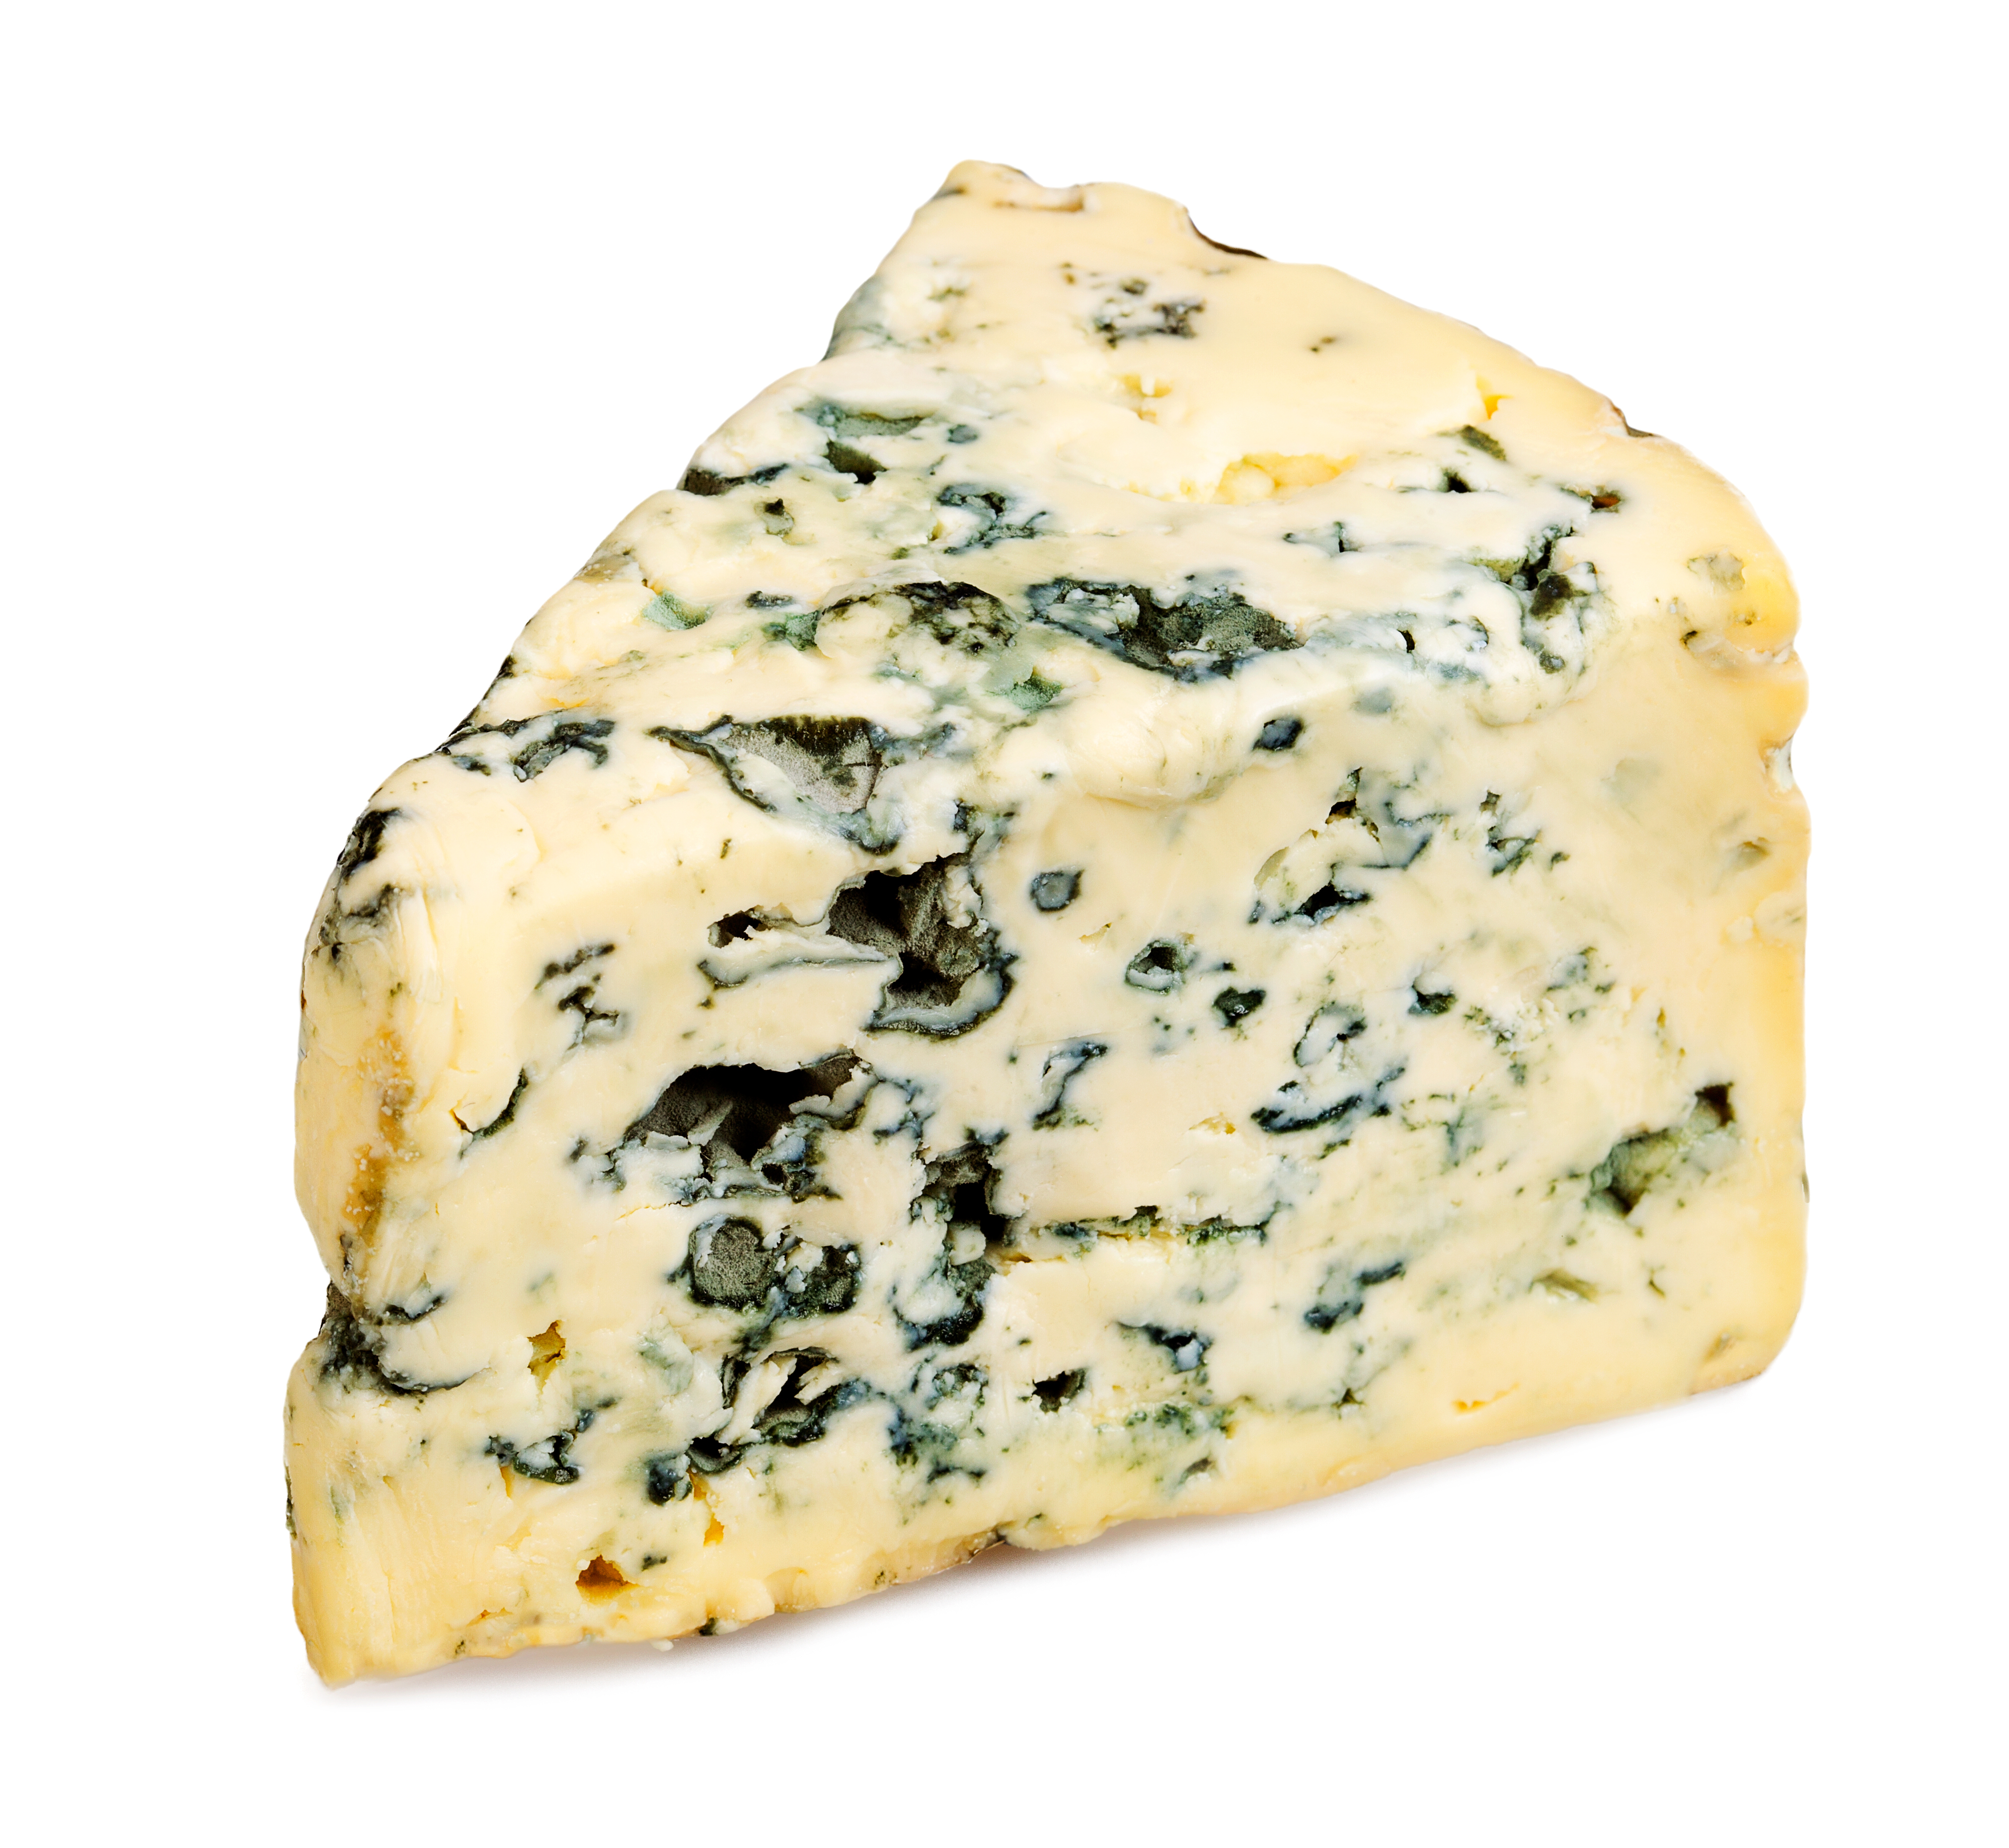 Sýr z lodi Kronan by chutnal zřejmě jako směs tradičního plísňového sýru Roquefort a droždí.